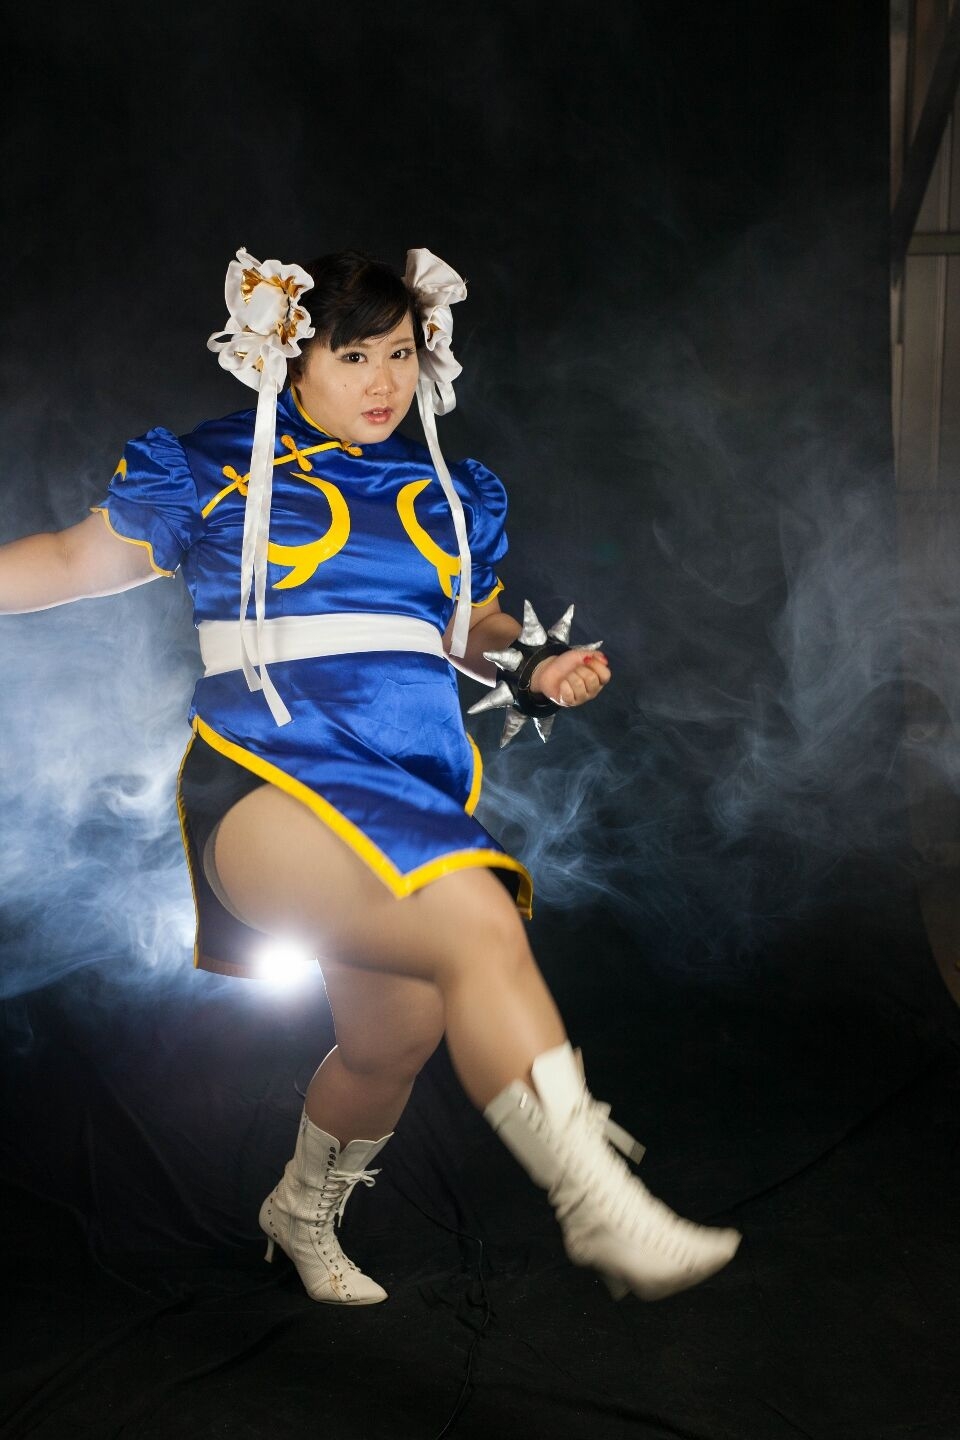 (渡辺さくらん) FIGHT FAT LADY (Sakuran Watanabe) (Mai Shiranui - Fatal Fury) (Chun-Li - Street Fighter) 56